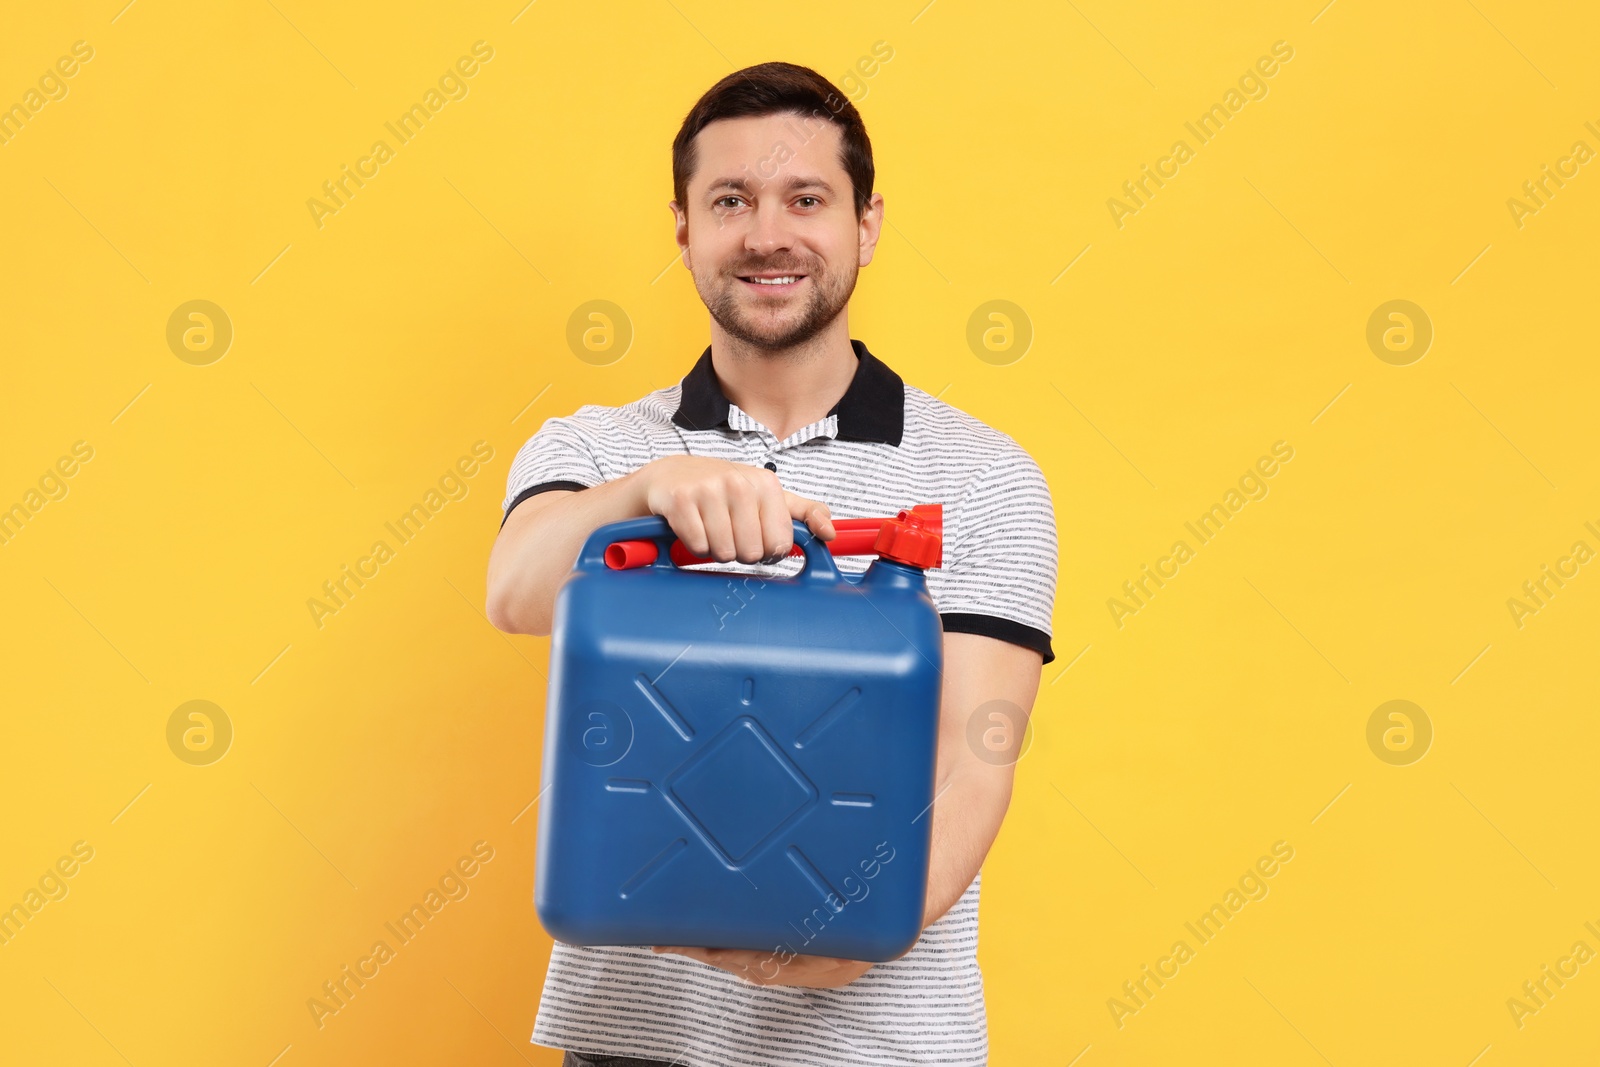 Photo of Man holding blue canister on orange background